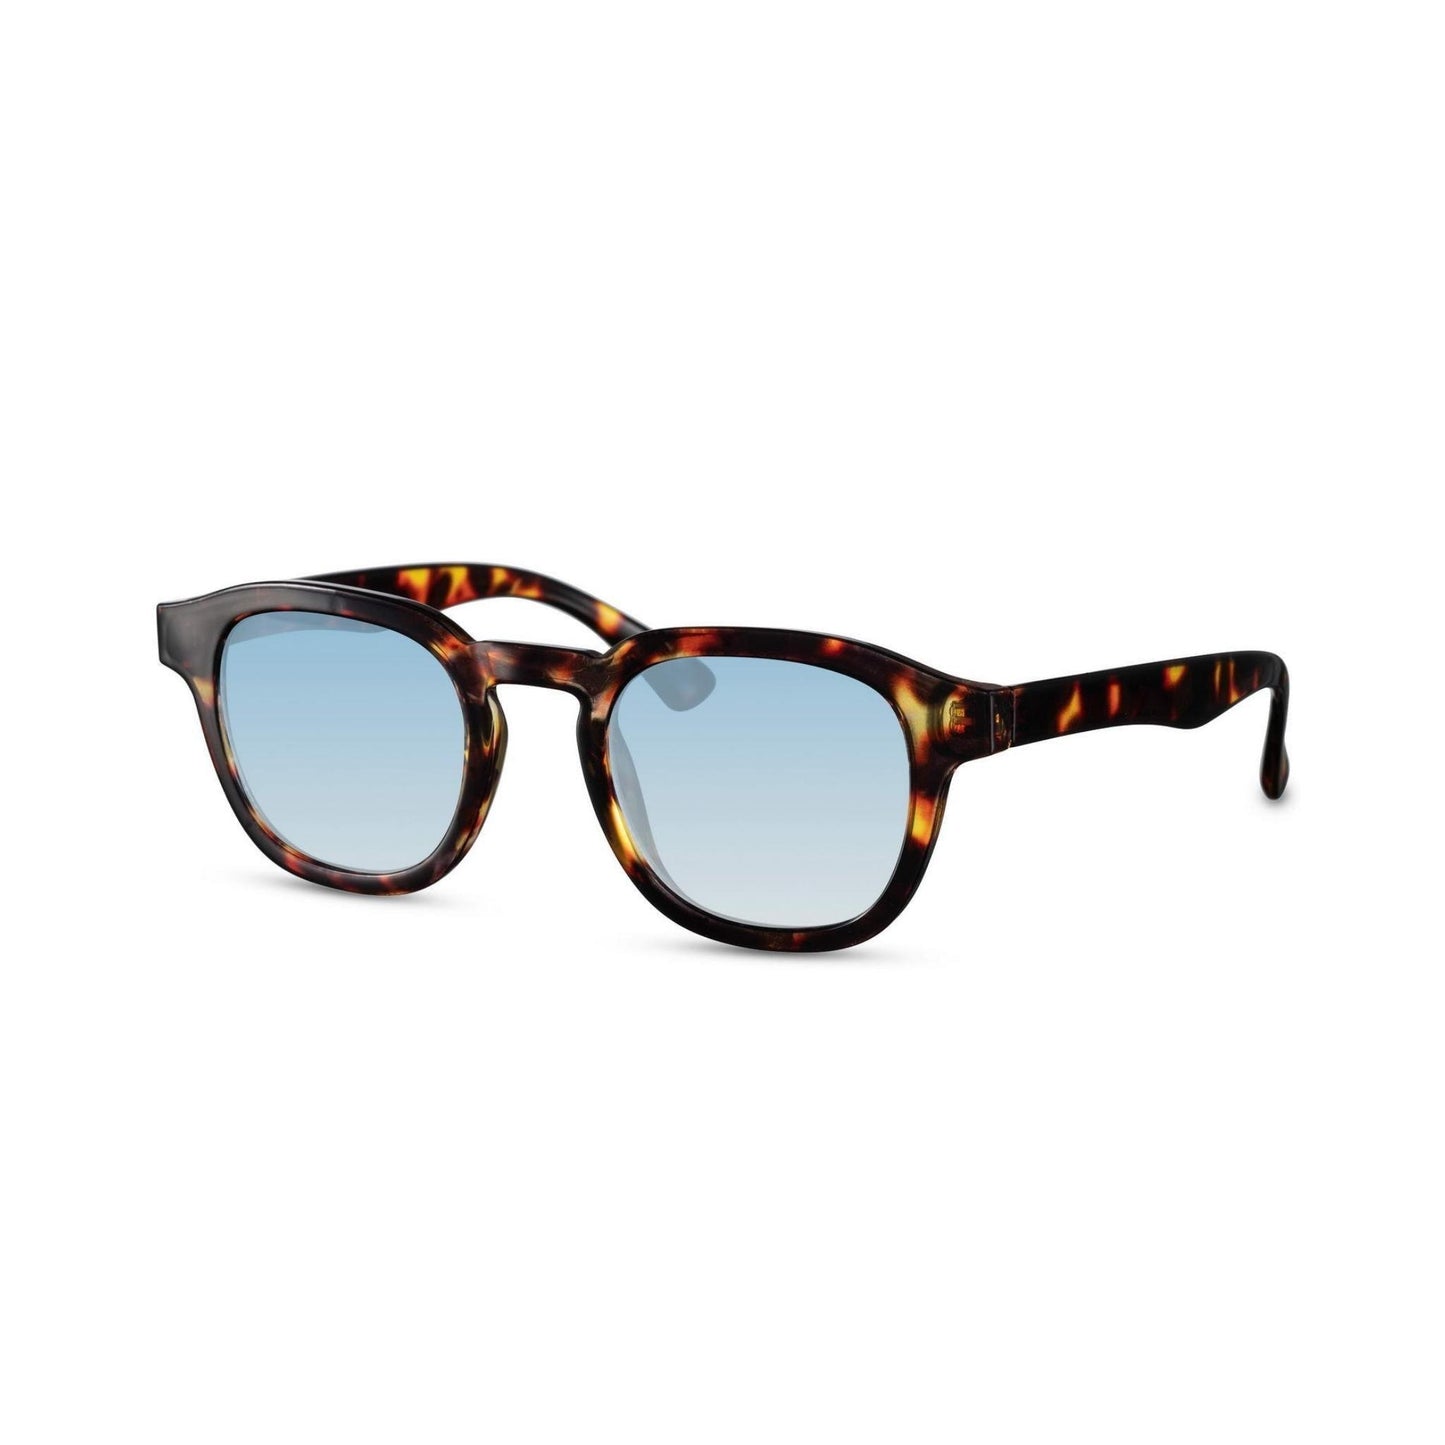 Γυαλιά ηλίου Montreal της Exposure Sunglasses με προστασία UV400 με καφέ σκελετό και μπλε φακό.Πλάγια προβολή.